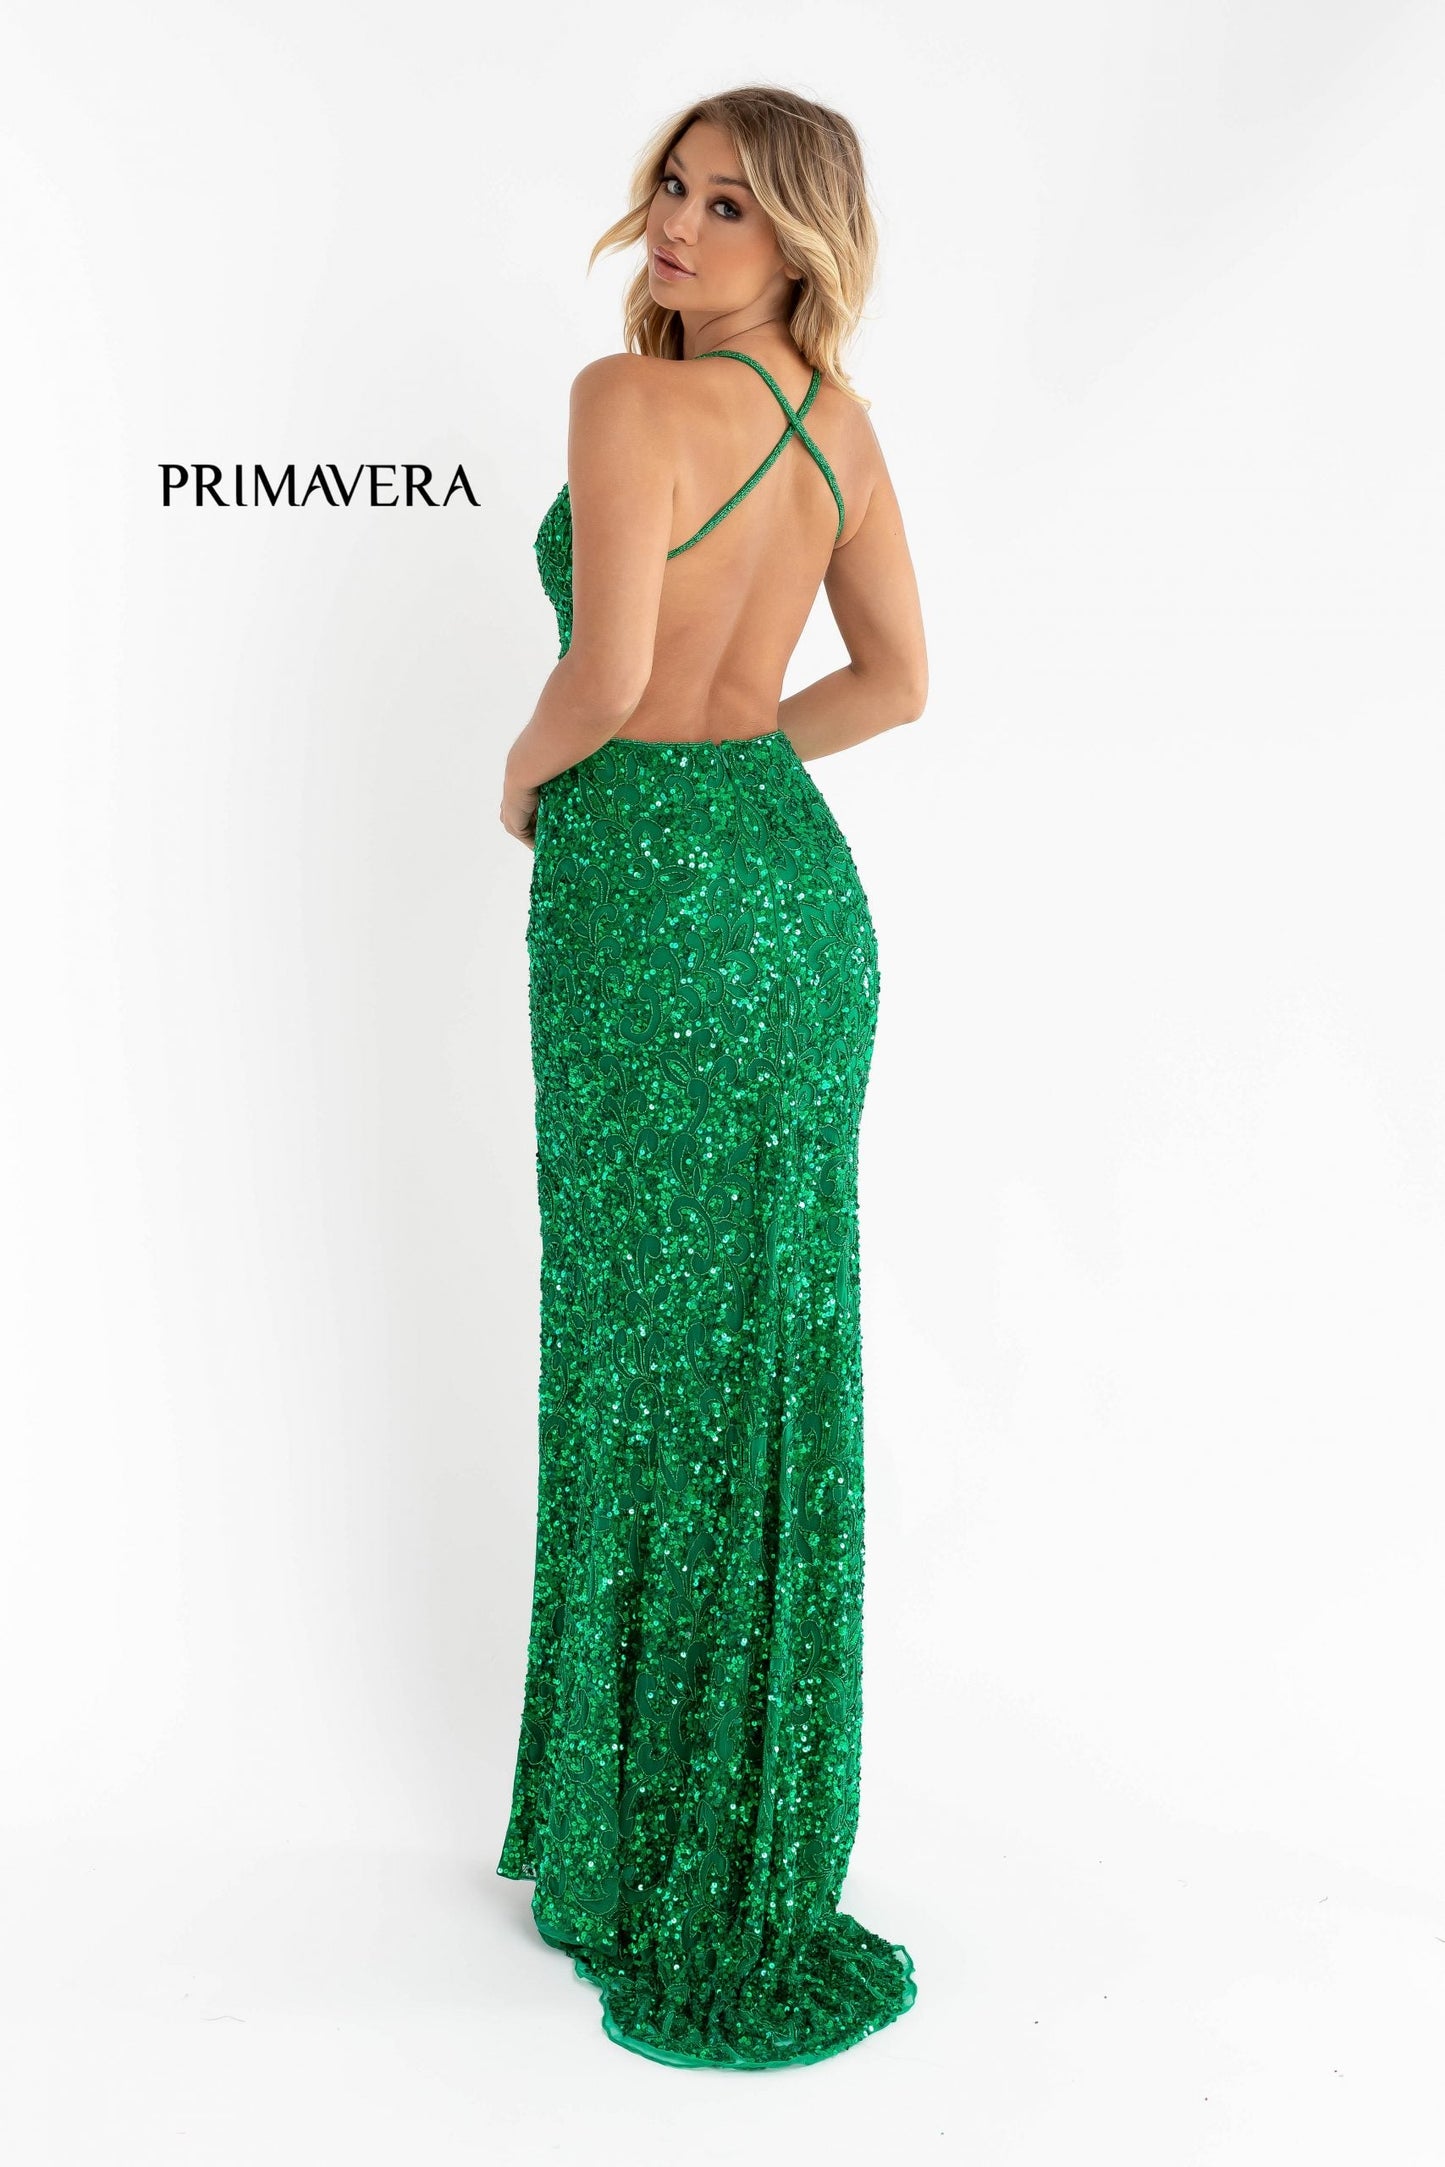 Primavera Couture 3295 Size 2, 6, 8 Emerald Prom Dress V Neckline Sequins Backless Slit Formal Evening Gown